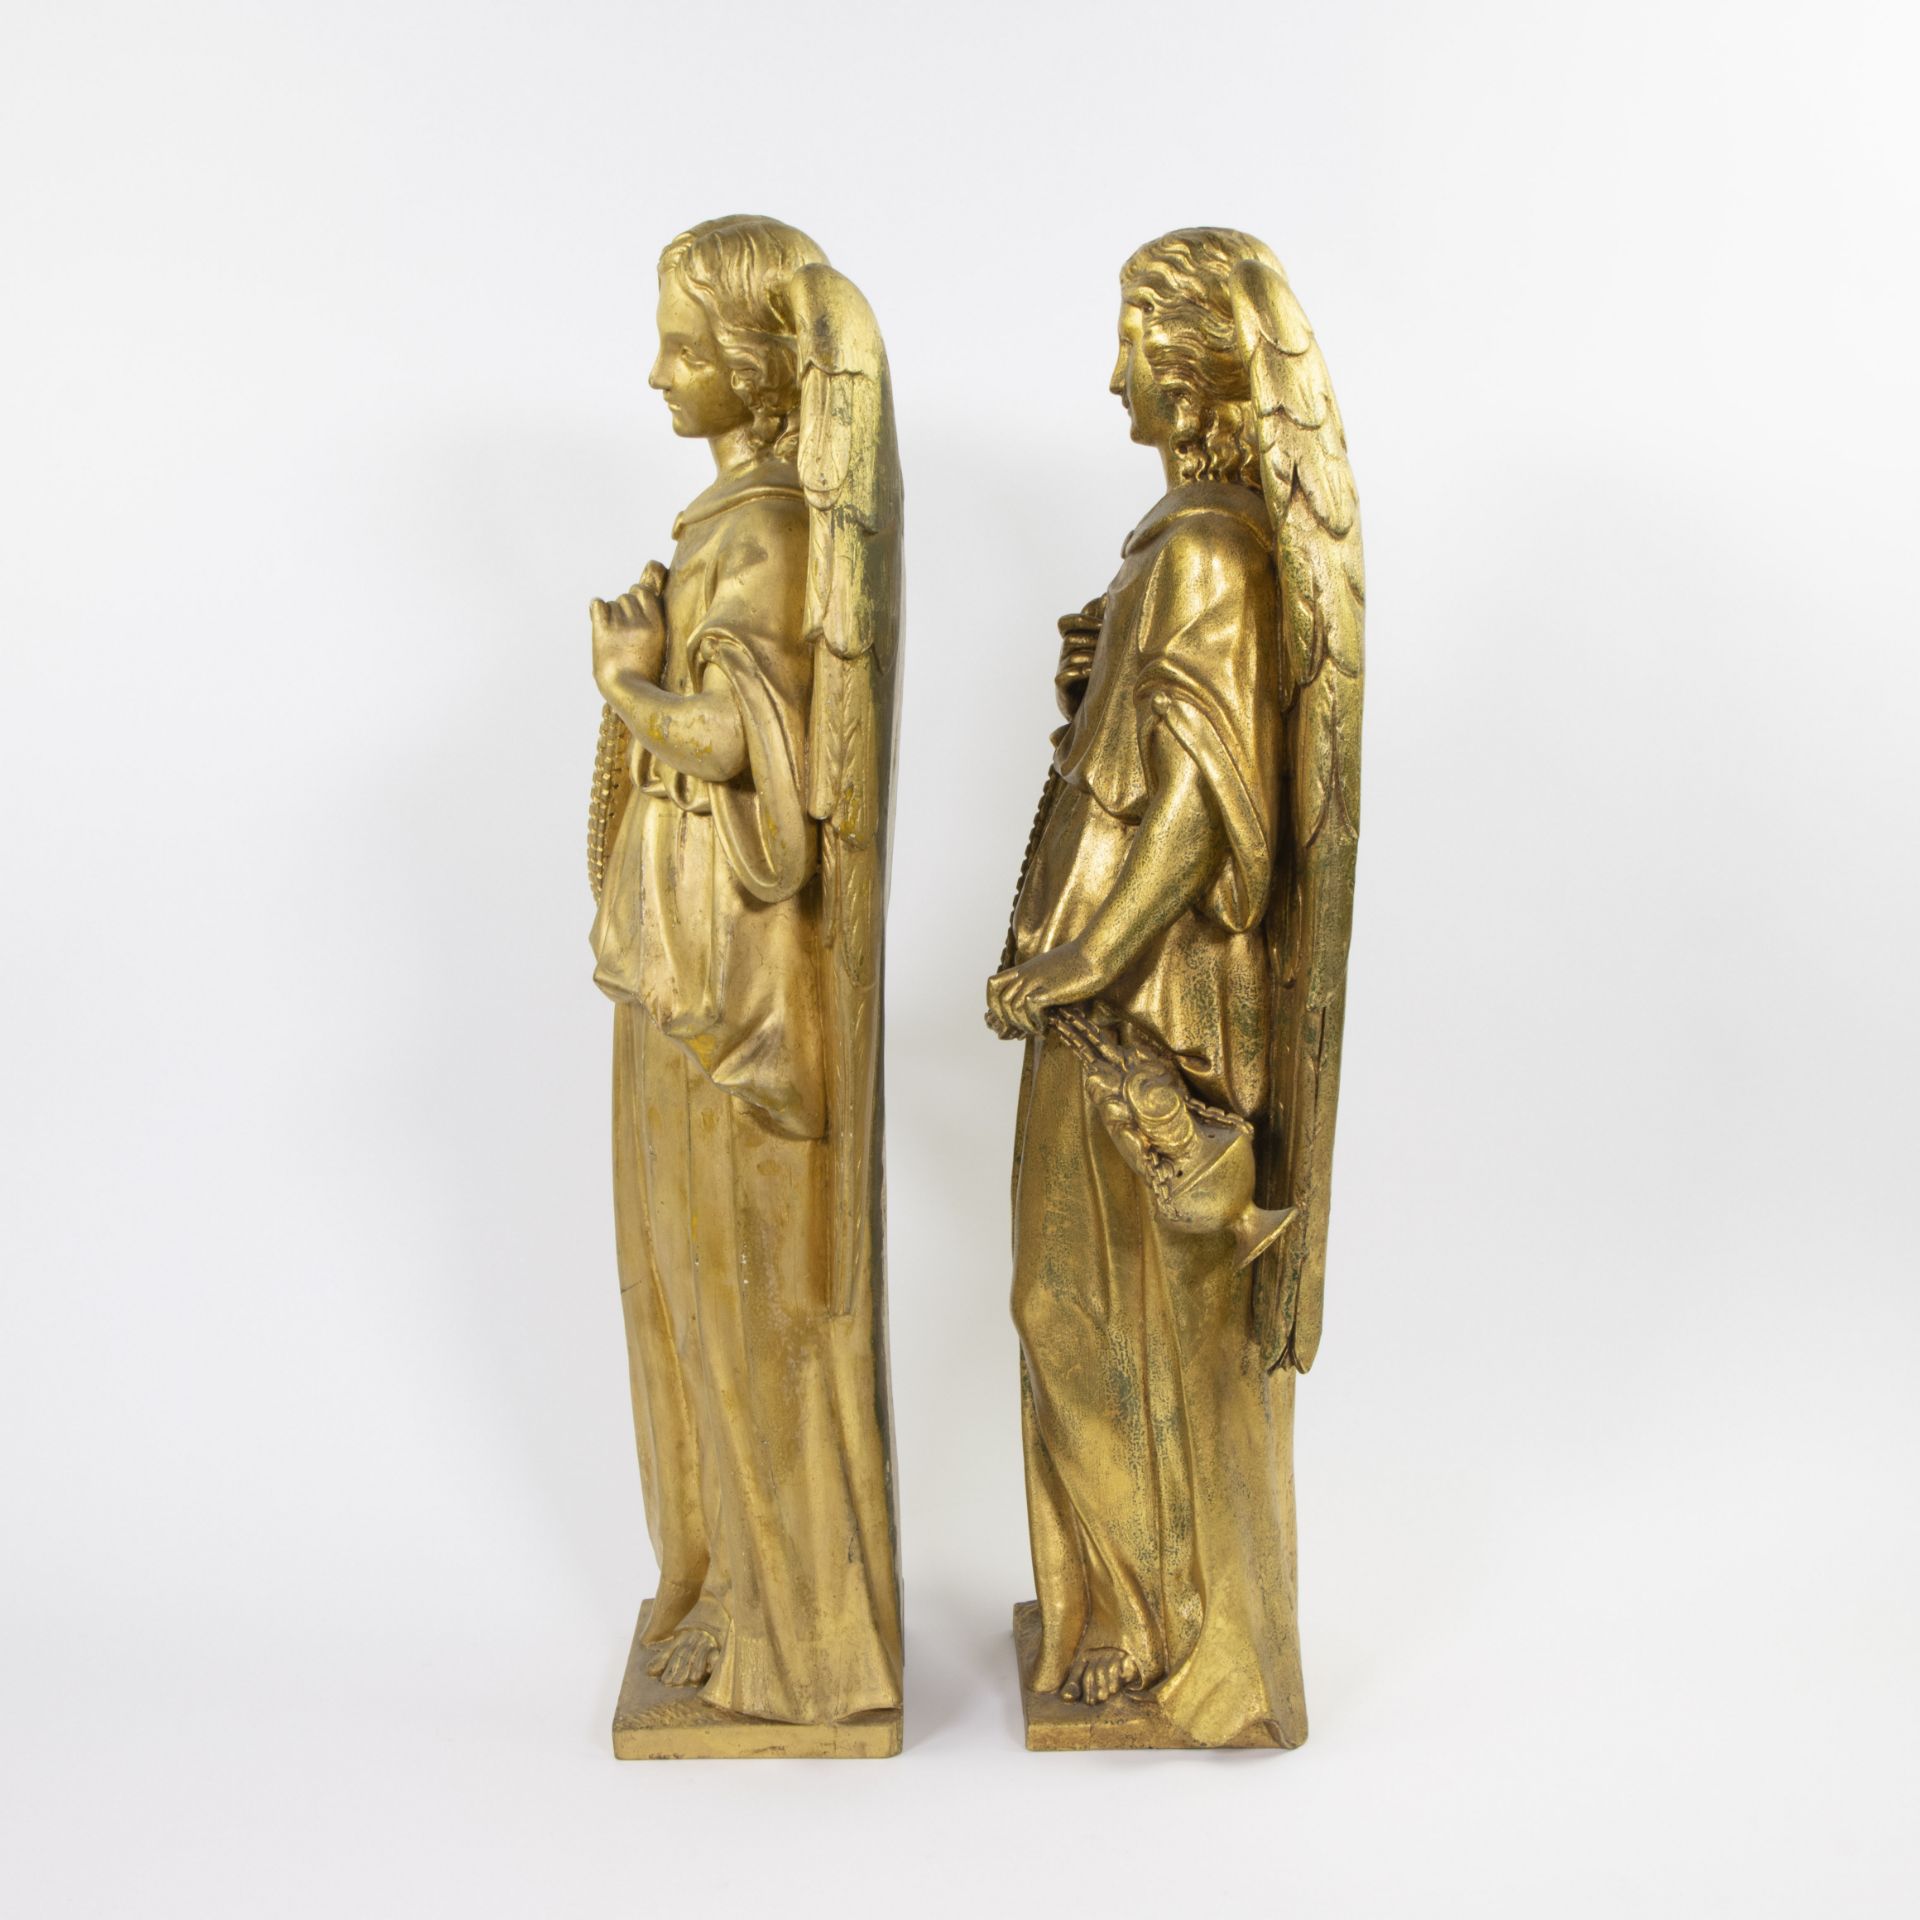 Pair of neo-gothic gilded wooden angels, Flemish, 19th century - Bild 2 aus 4